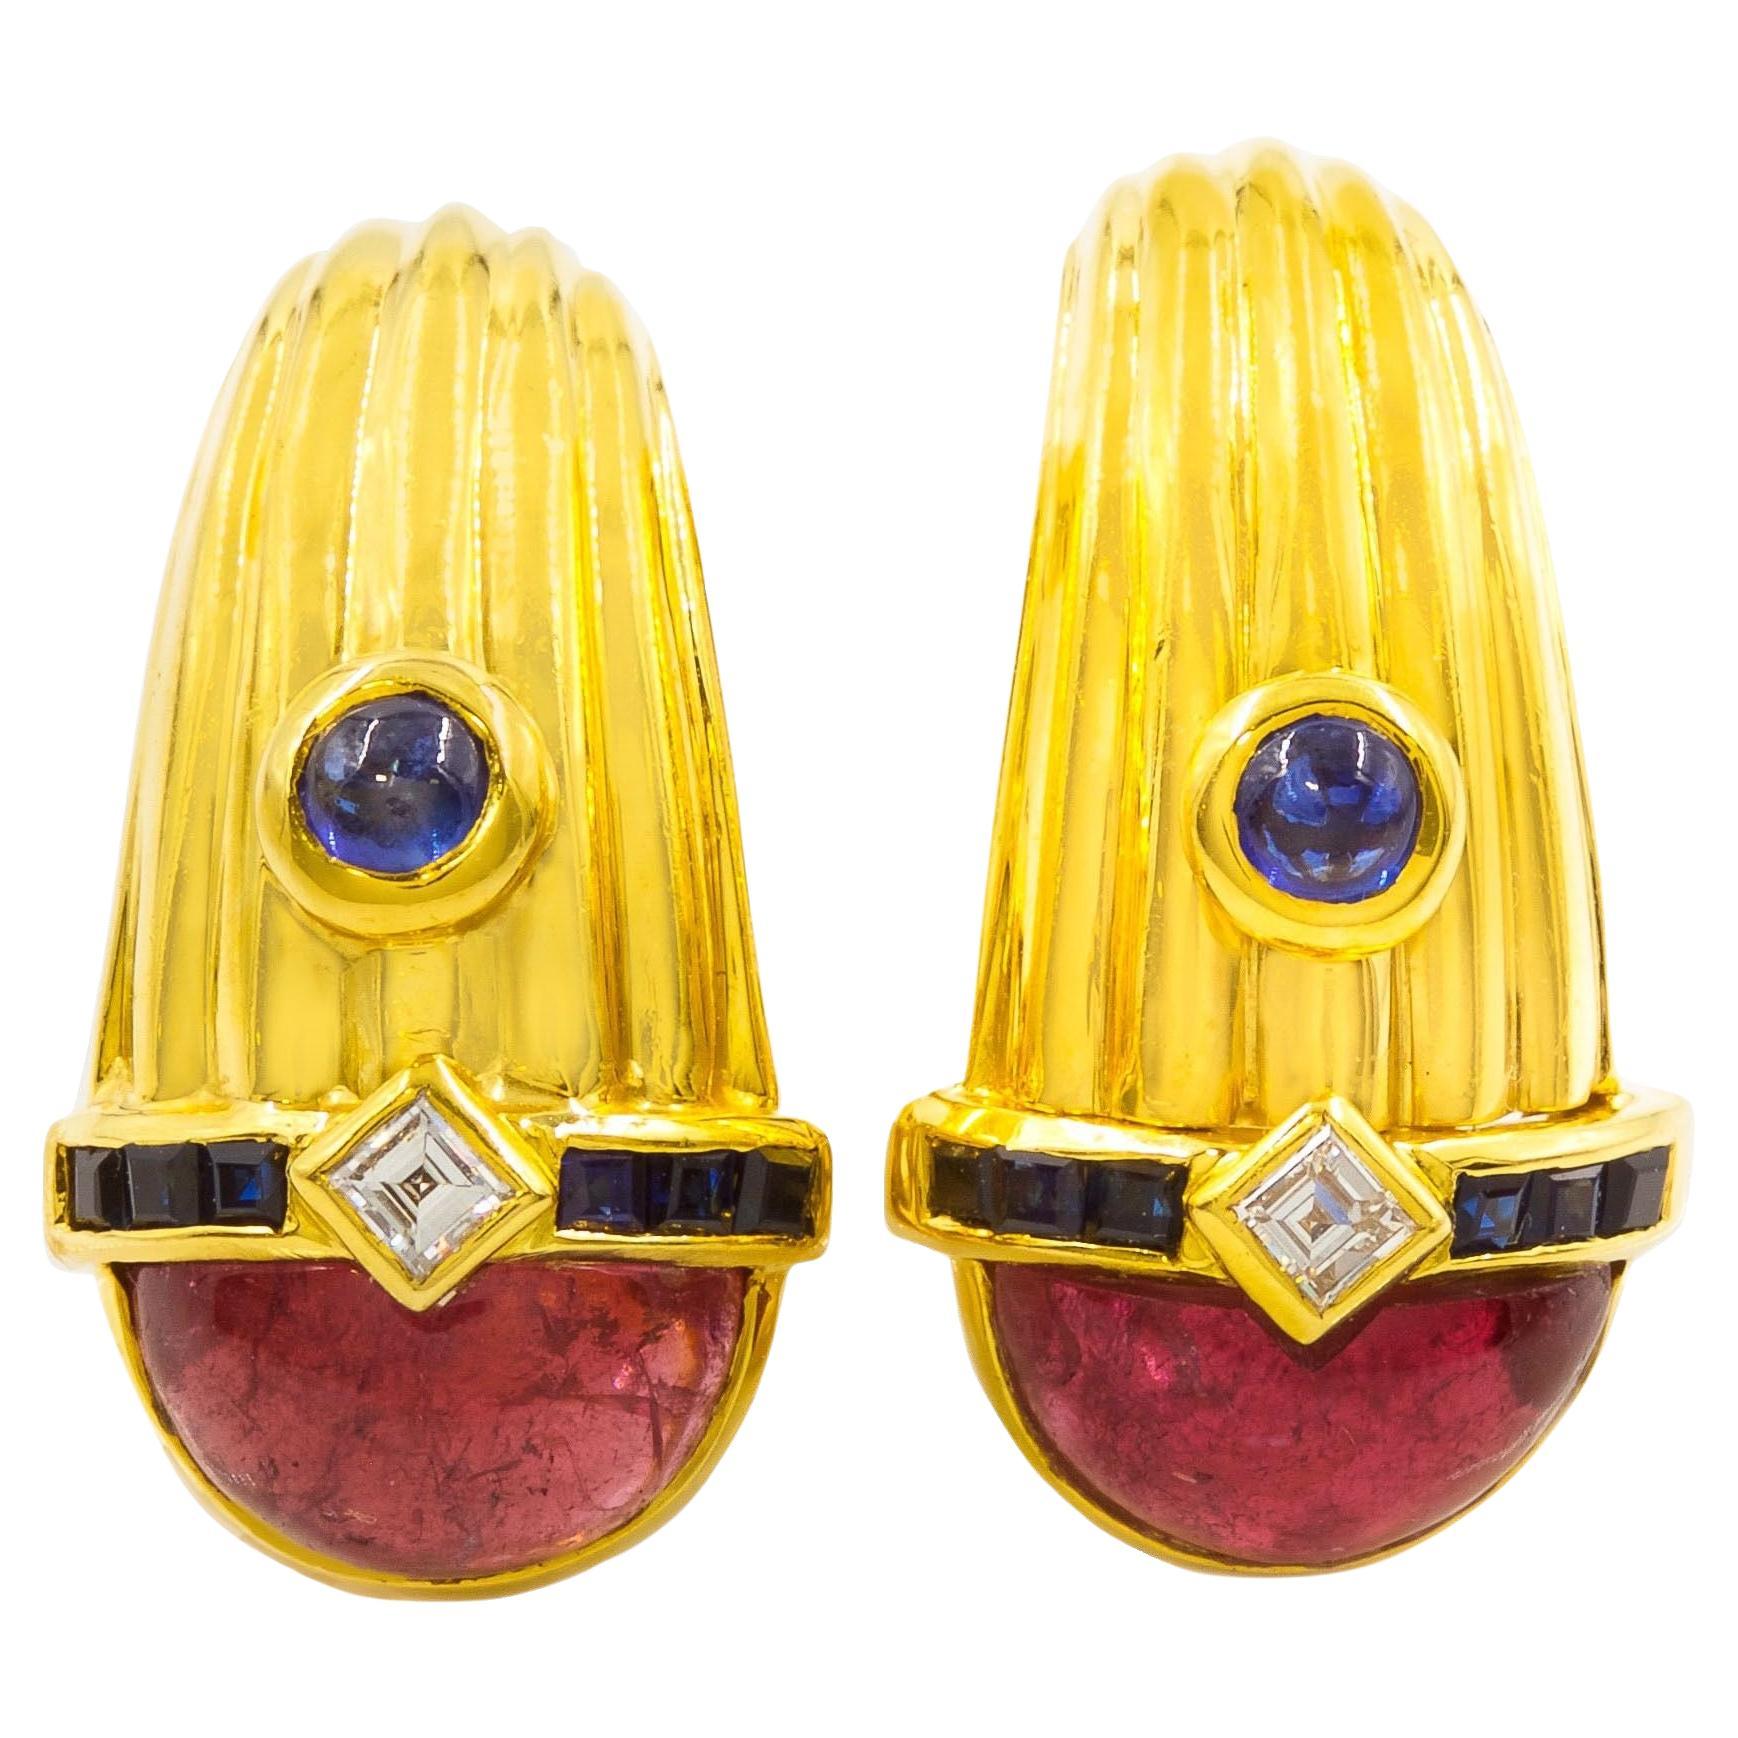 Authentique boucles d'oreilles italiennes en or 18 carats, tourmaline et diamants par Roberto Legnazzi